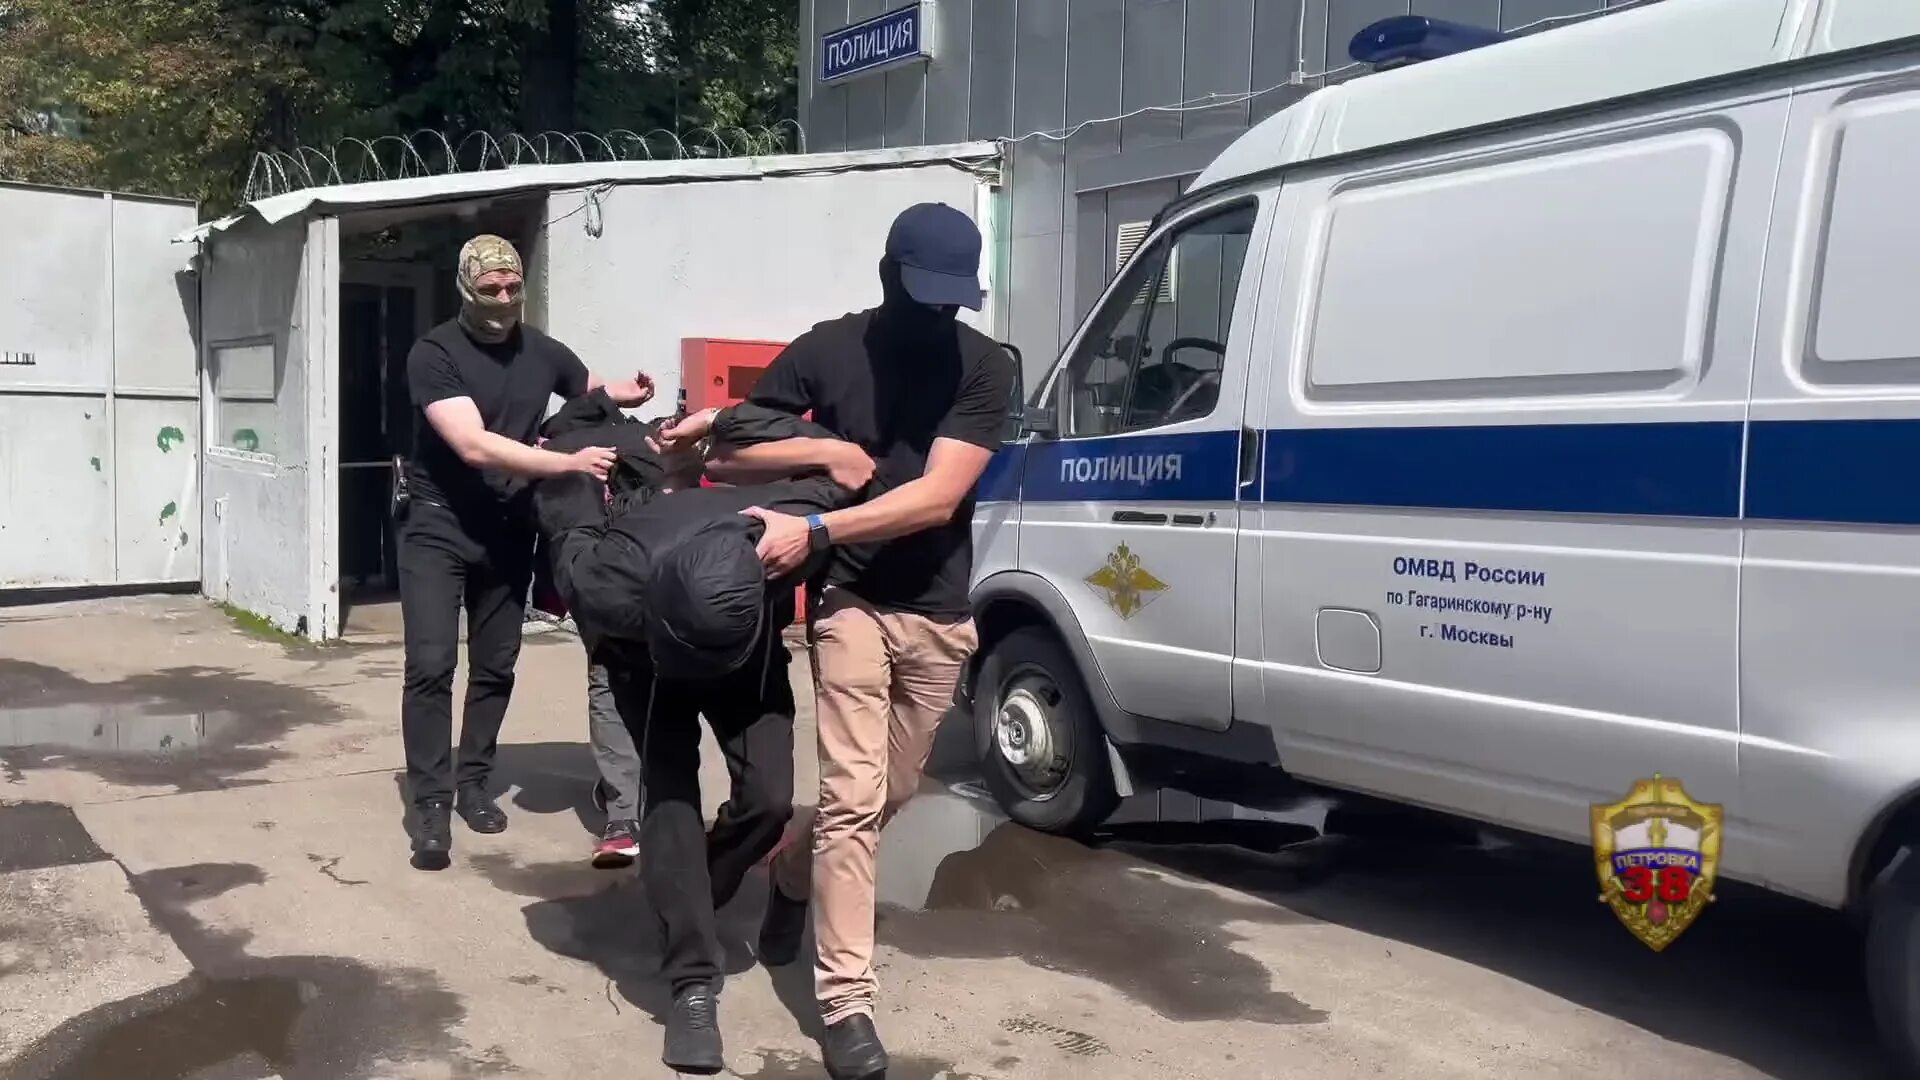 16 нападение. Драки хаос грабеж полиция Россия арт рисунок фон.